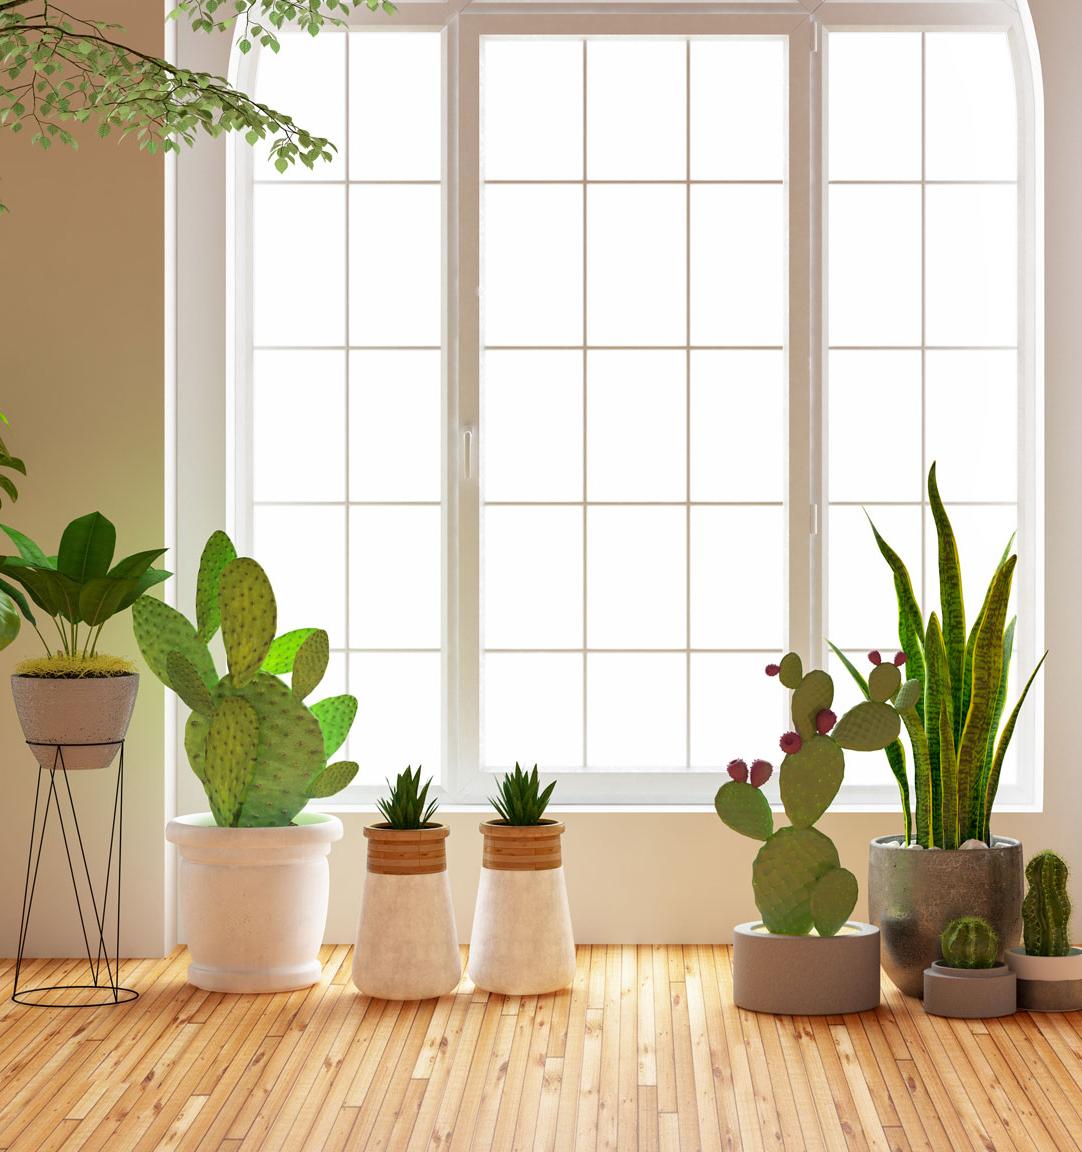 5 комнатных растений, которые очистят воздух в помещении